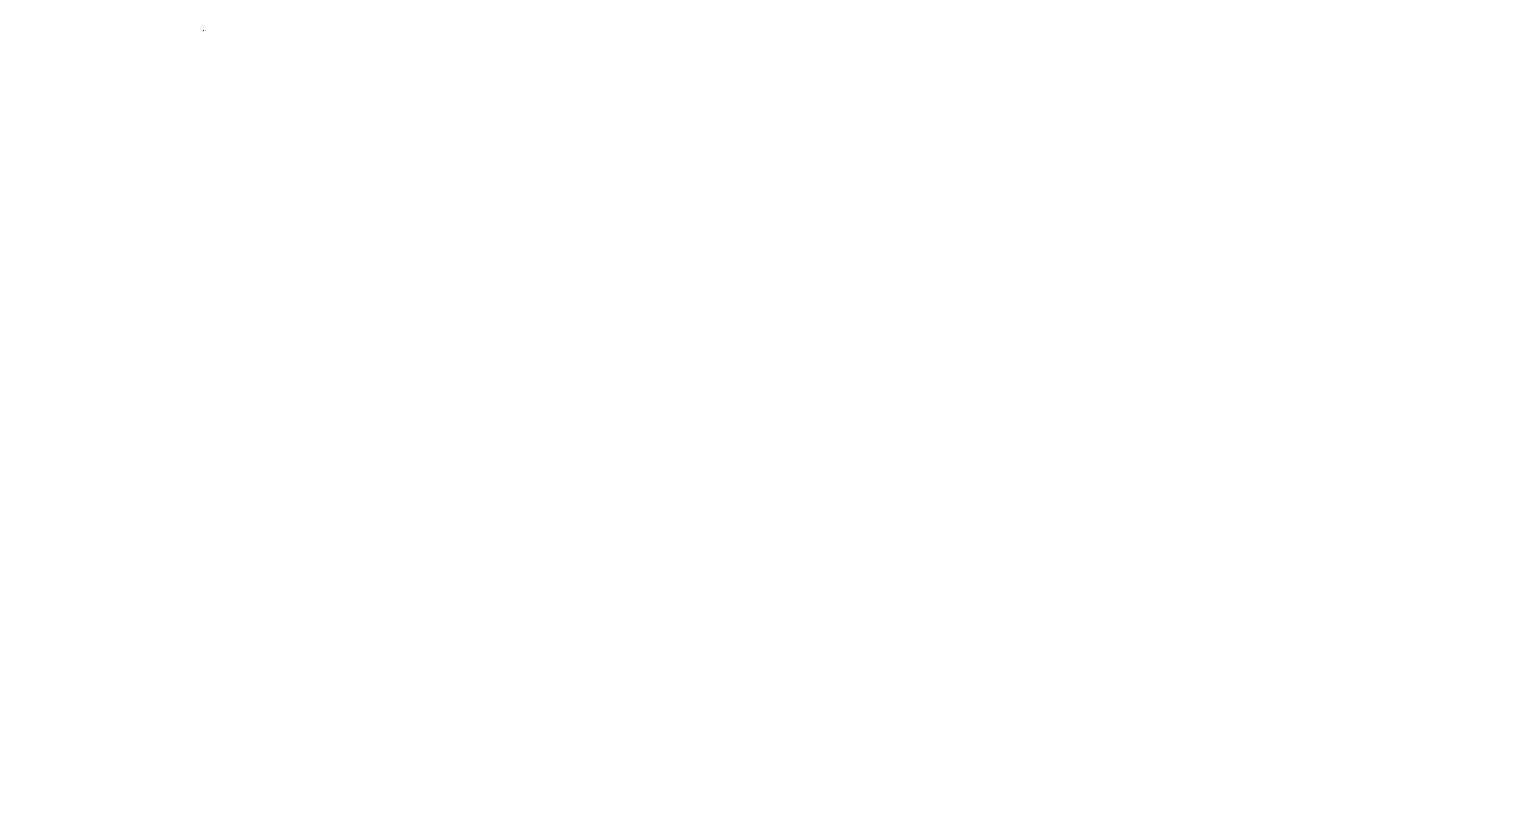 Легковой автомобиль Mitsubishi Lancer, 2008 г.в., г/н Т351УМ35, VIN JMBSNCY3A8U006432.Собственник: Рыбачковский С.Л.Место нахождение имущества: Вологодская область, г. Череповец, ул. Парковая, д. 24 Основание реализации имущества: Постановление судебного пристава-исполнителя о передаче арестованного имущества на торги Собственник имущества: Рыбачковский С. Л. Порядок ознакомления с имуществом: Ознакомление с дополнительной информацией о предмете аукциона и иным вопросам осуществляется  по рабочим дням с 10:00 до 12:00 и с 15:00 до 17.00 с момента публикации информационного сообщения до даты окончания подачи заявок Обременения реализуемого имущества: С обременением имущества можно ознакомиться в файле Информационное сообщение Условия договора, заключаемого по результатам торгов: Продавец заключает договор купли-продажи имущества с лицом, выигравшим публичные торги, путем подписания договора при помощи ЭЦП в электронной форме и на бумажном носителе по адресу нахождения продавца: г. Вологда, ул. Пушкинская, д.25, каб.506 Порядок и сроки уплаты покупной цены по итогам проведения торгов: Лицо, выигравшее торги, должно внести в течение пяти дней после их окончания сумму, за которую данным лицом куплено арестованное имущество (покупную цену), за вычетом ранее внесенного задатка на счет продавца.    Реквизиты для внесения оставшейся суммы: Получатель: УФК по Вологодской области (ТУ Росимущества в Вологодской области л/с 05301A27050) ИНН 3525237735, КПП 352501001 р/с 03212643000000013000 ОТДЕЛЕНИЕ ВОЛОГДА//УФК по Вологодской области г. Вологда БИК 011909101 КБК 16700000000000000000 Вологодская область, г. Череповец, ул. Парковая, д. 24 Информация по предыдущим торгам: Отстутствуют Форма собственности: Иная собственность Государственный регистрационный знак: Т351УМ35 Год выпуска: 2008 VIN номер: JMBSNCY3A8U006432 Вид транспорта: Легковой Марка: Mitsubishi Модель: Lancer   